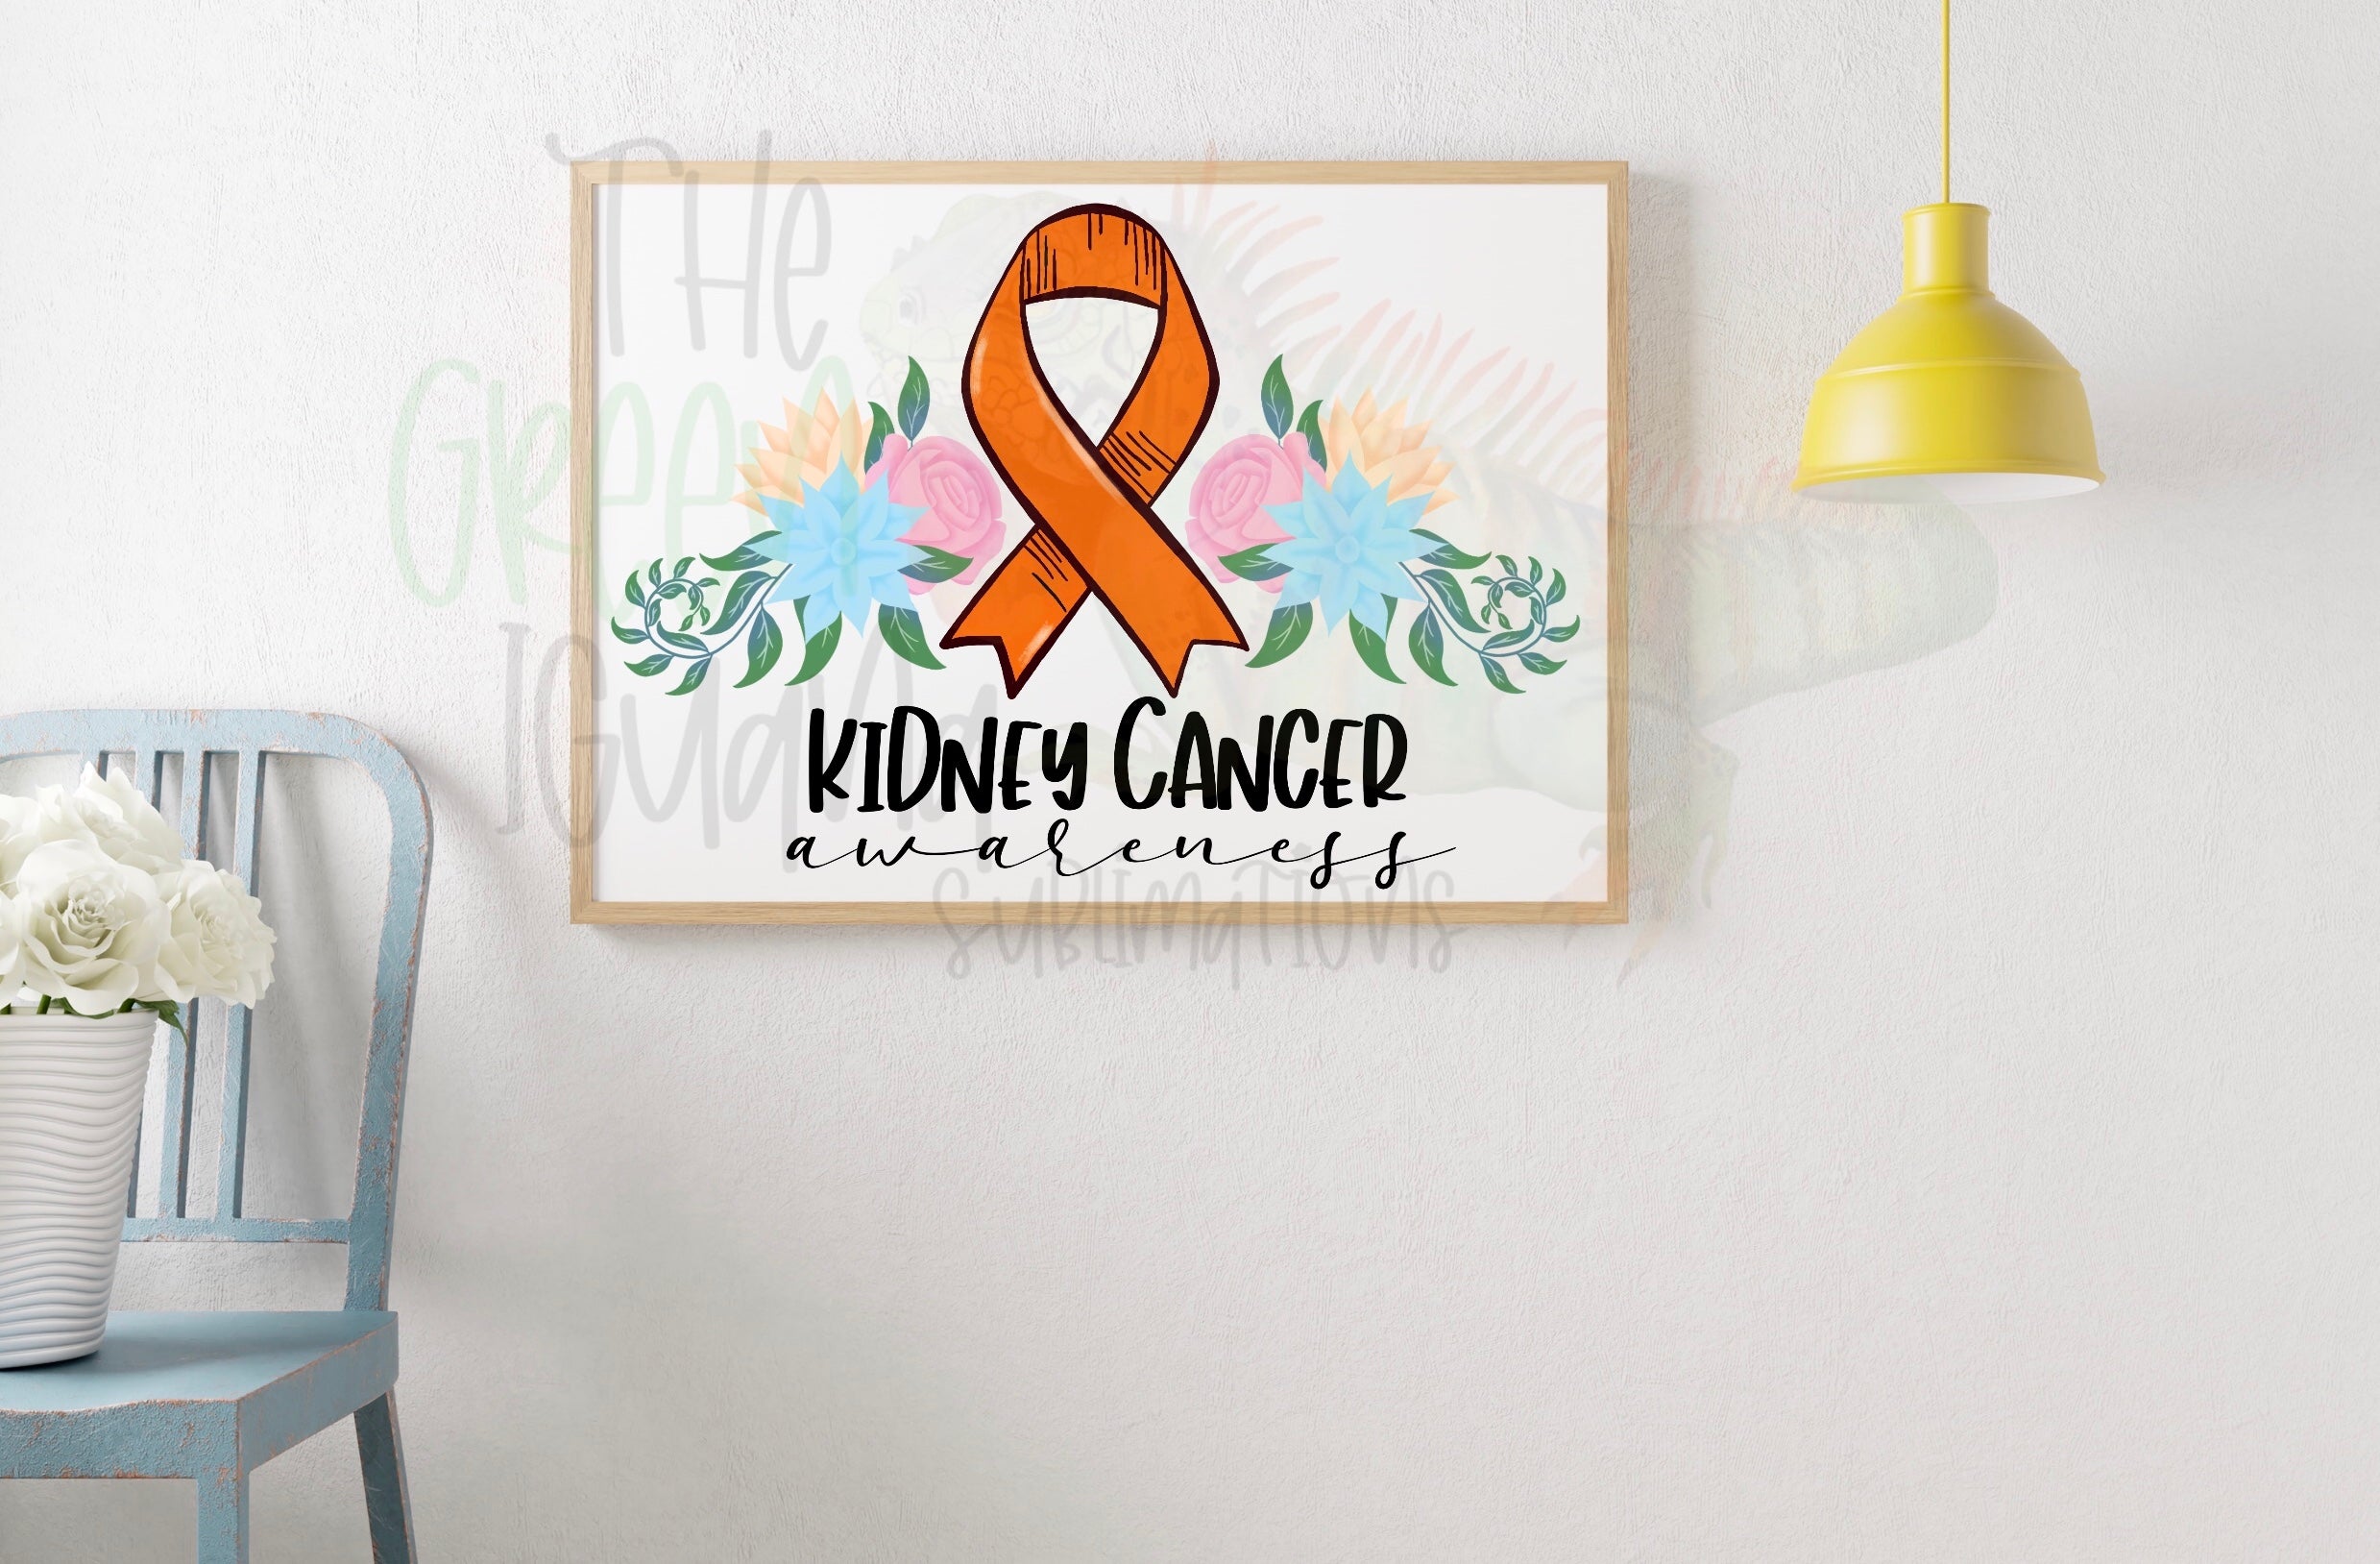 Kidney cancer awareness DIGITAL